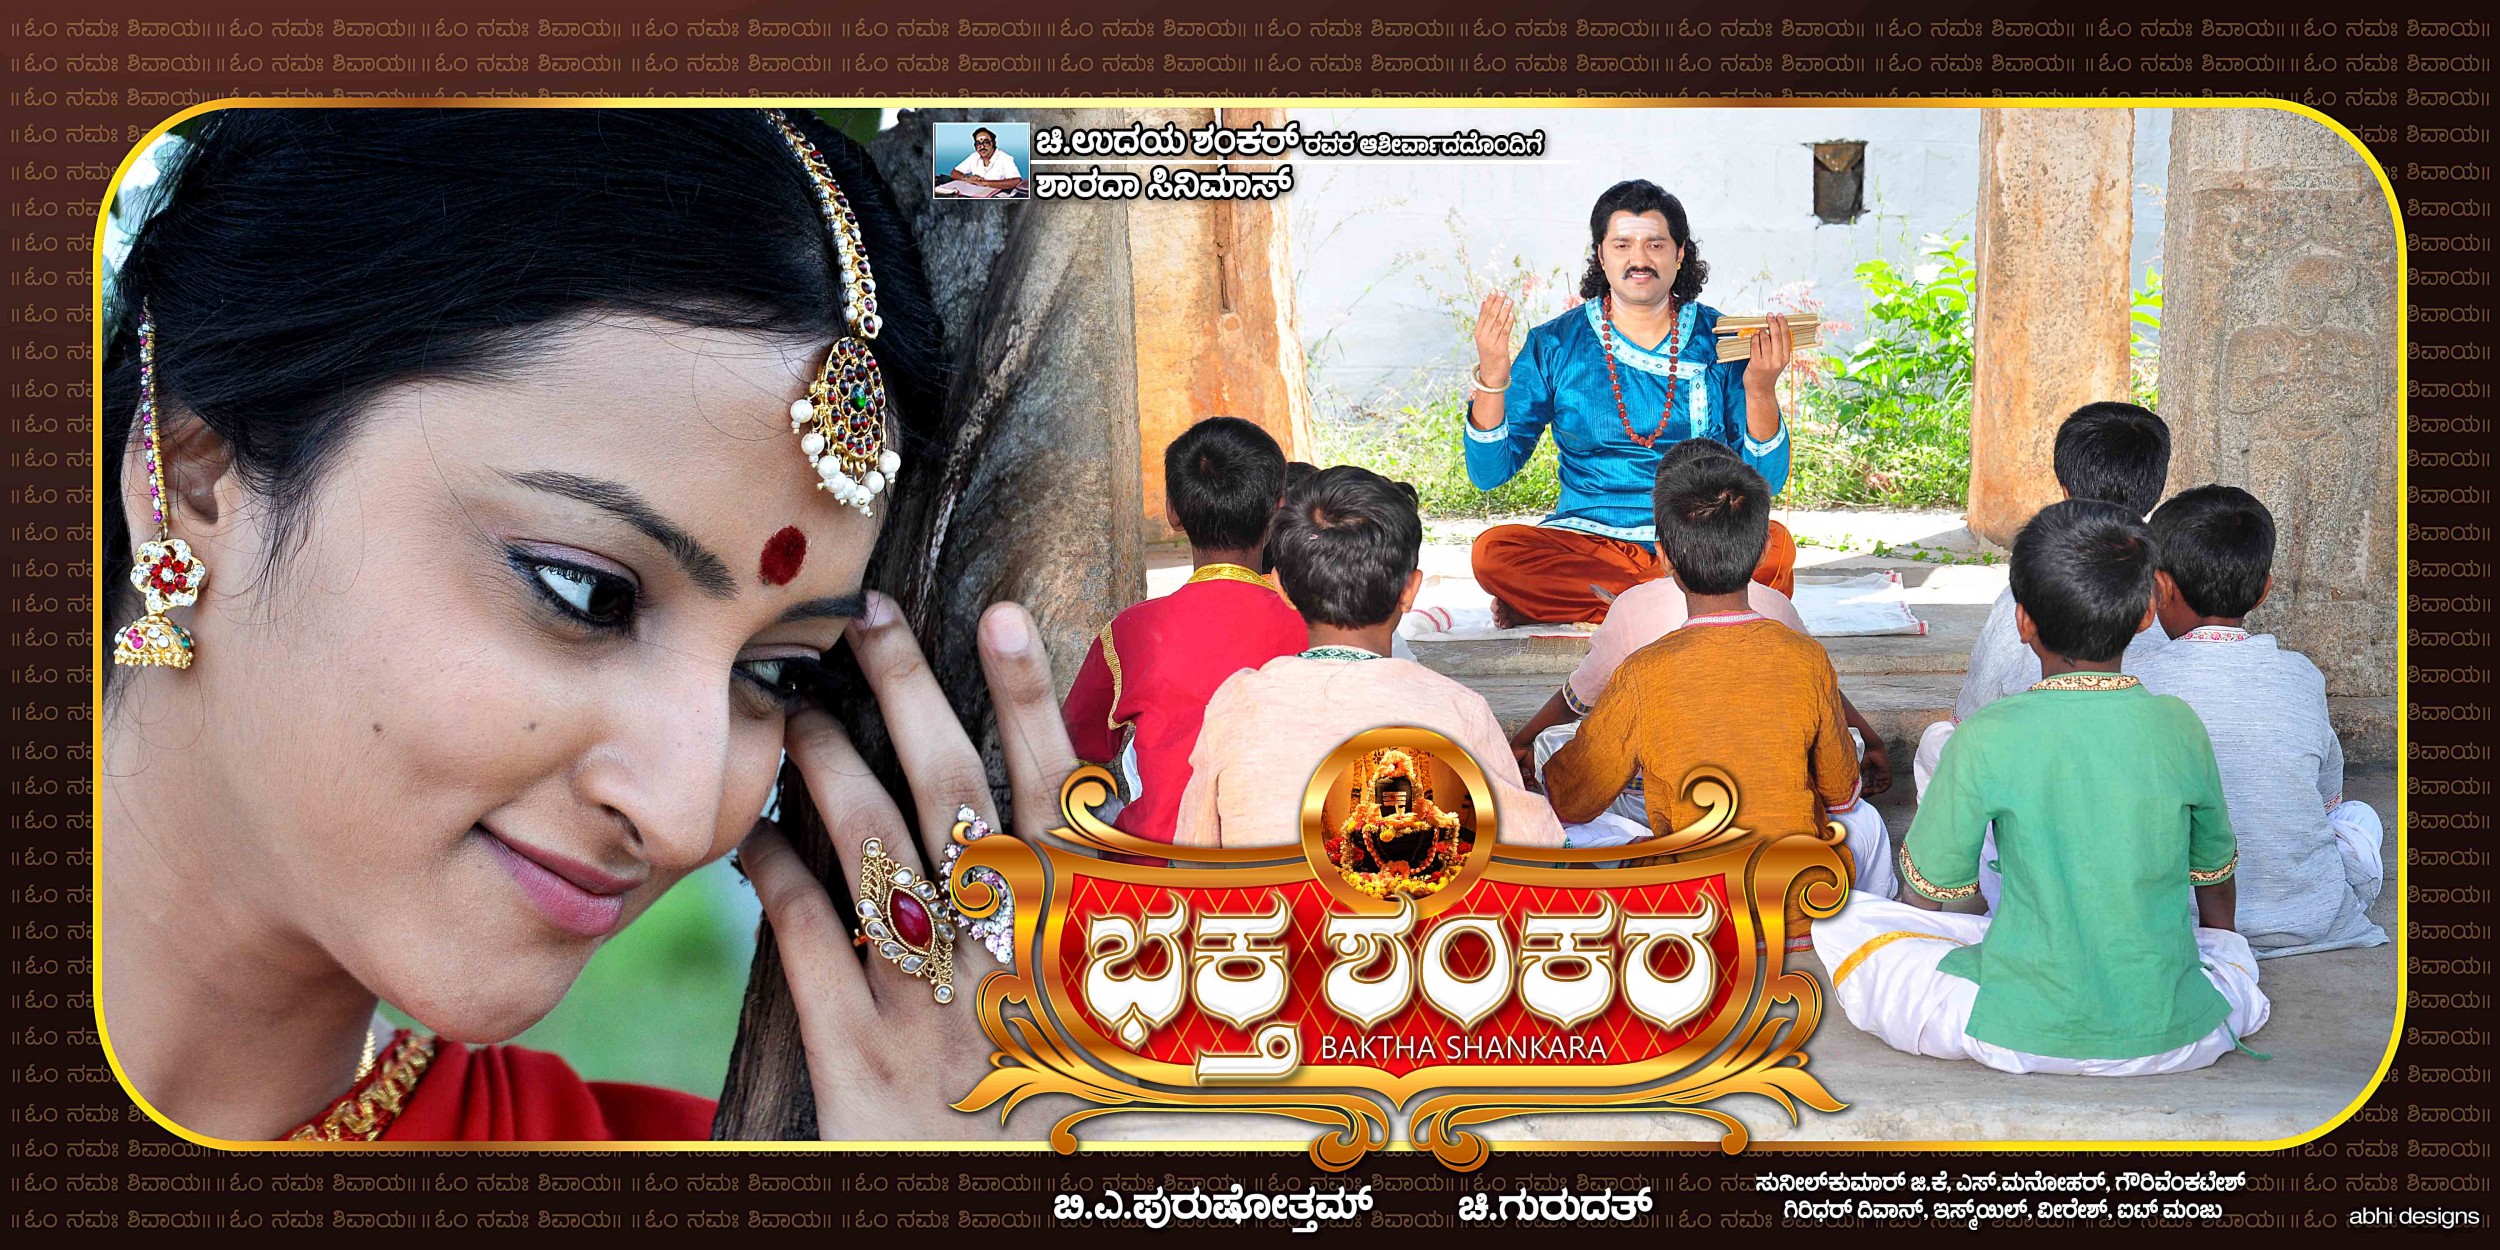 Mega Sized Movie Poster Image for Baktha Shankara (#4 of 10)